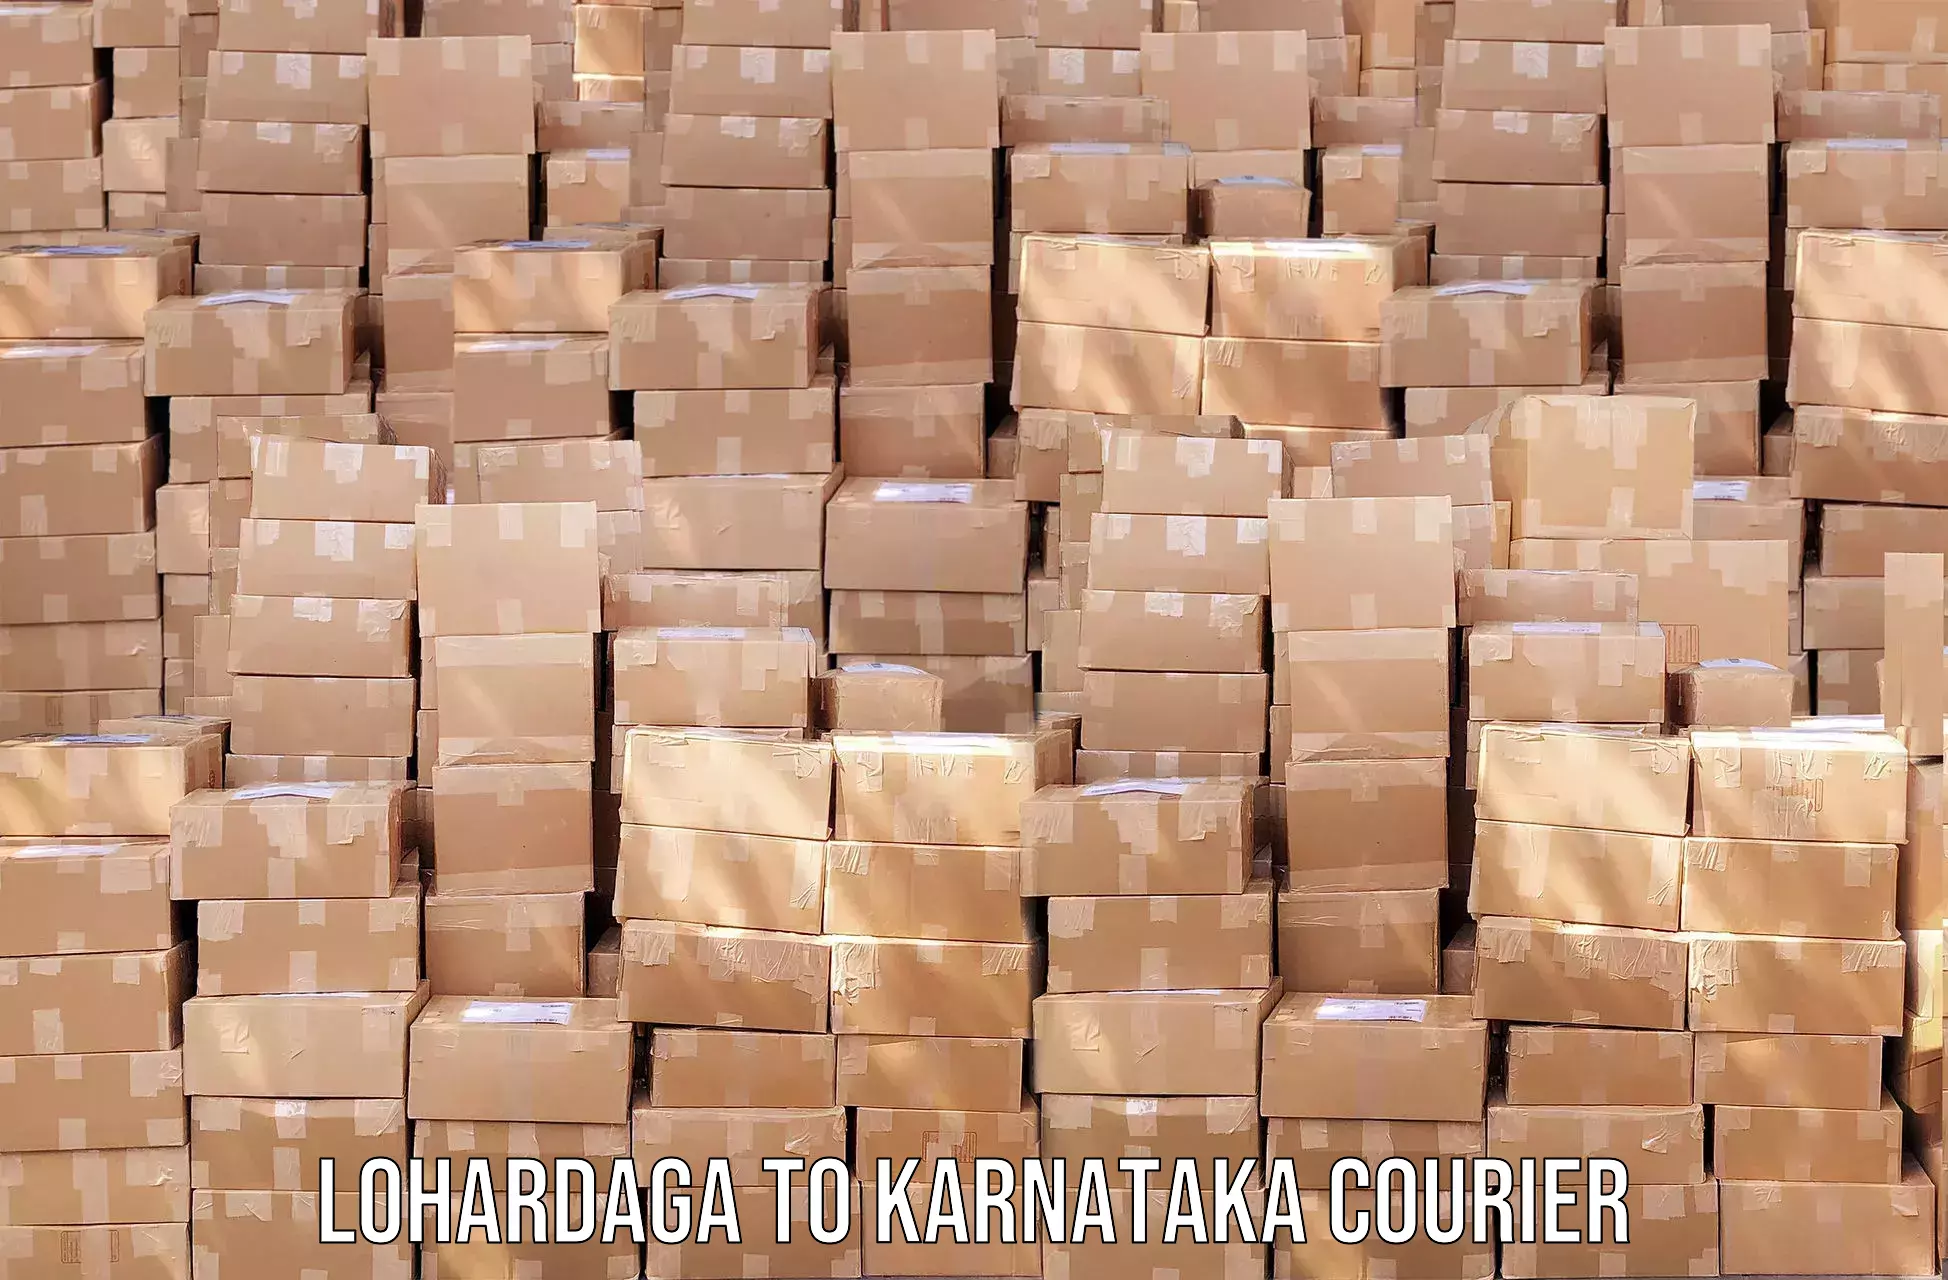 Optimized shipping routes in Lohardaga to Mangalore Port